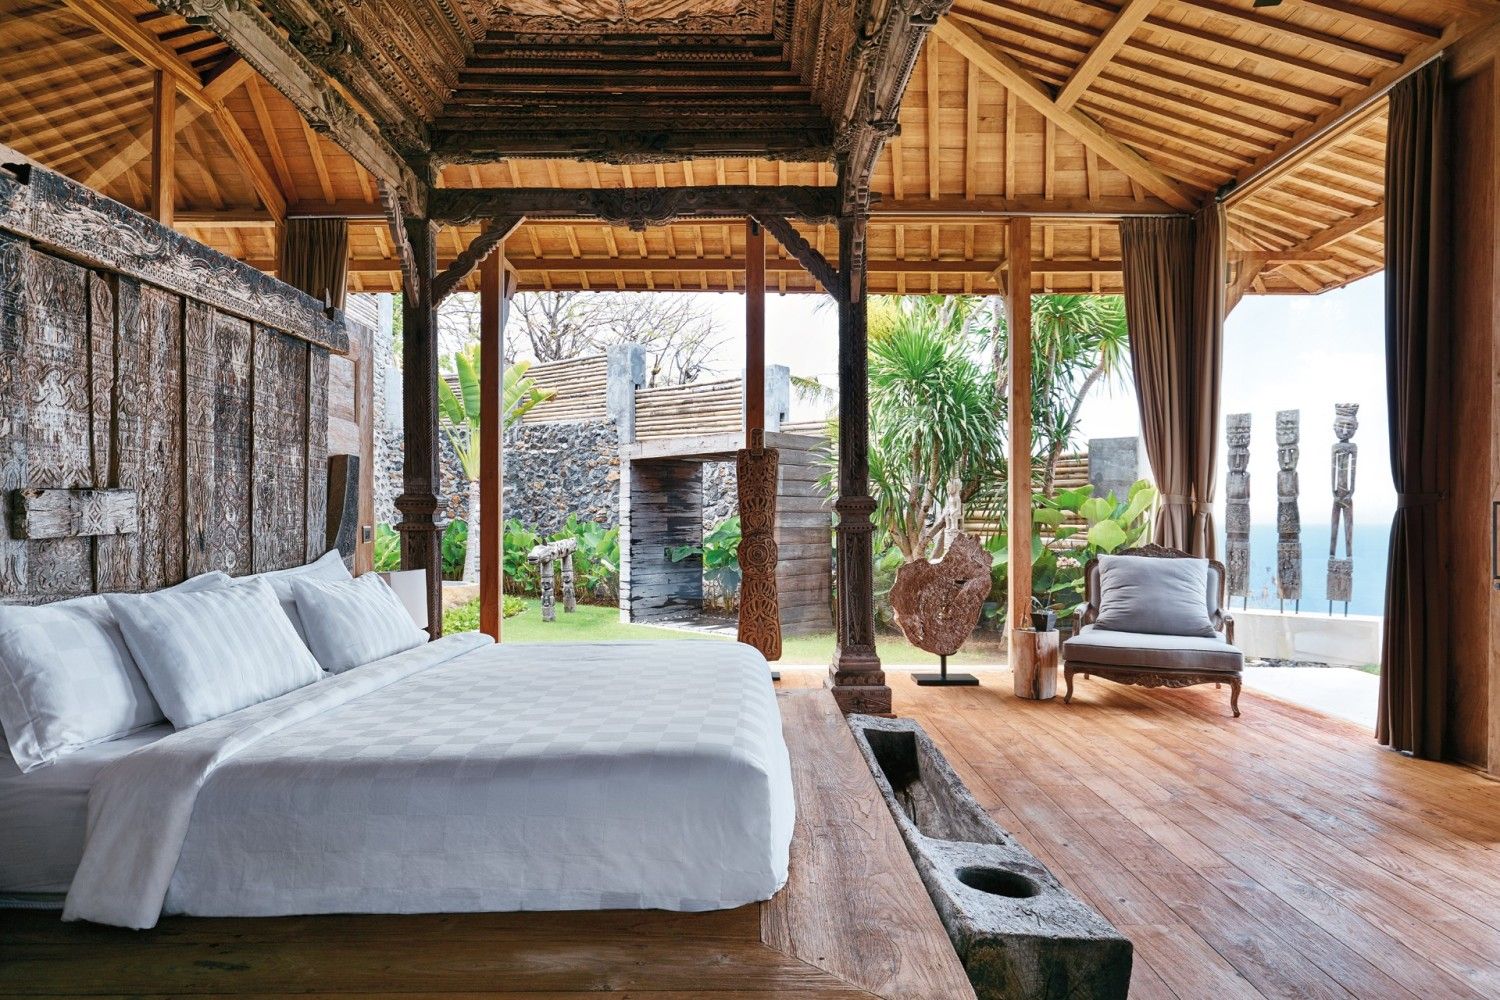 Unik Desain Interior Rumah Villa Bali 79 Dengan Tambahan Rumah Merancang Inspirasi oleh Desain Interior Rumah Villa Bali